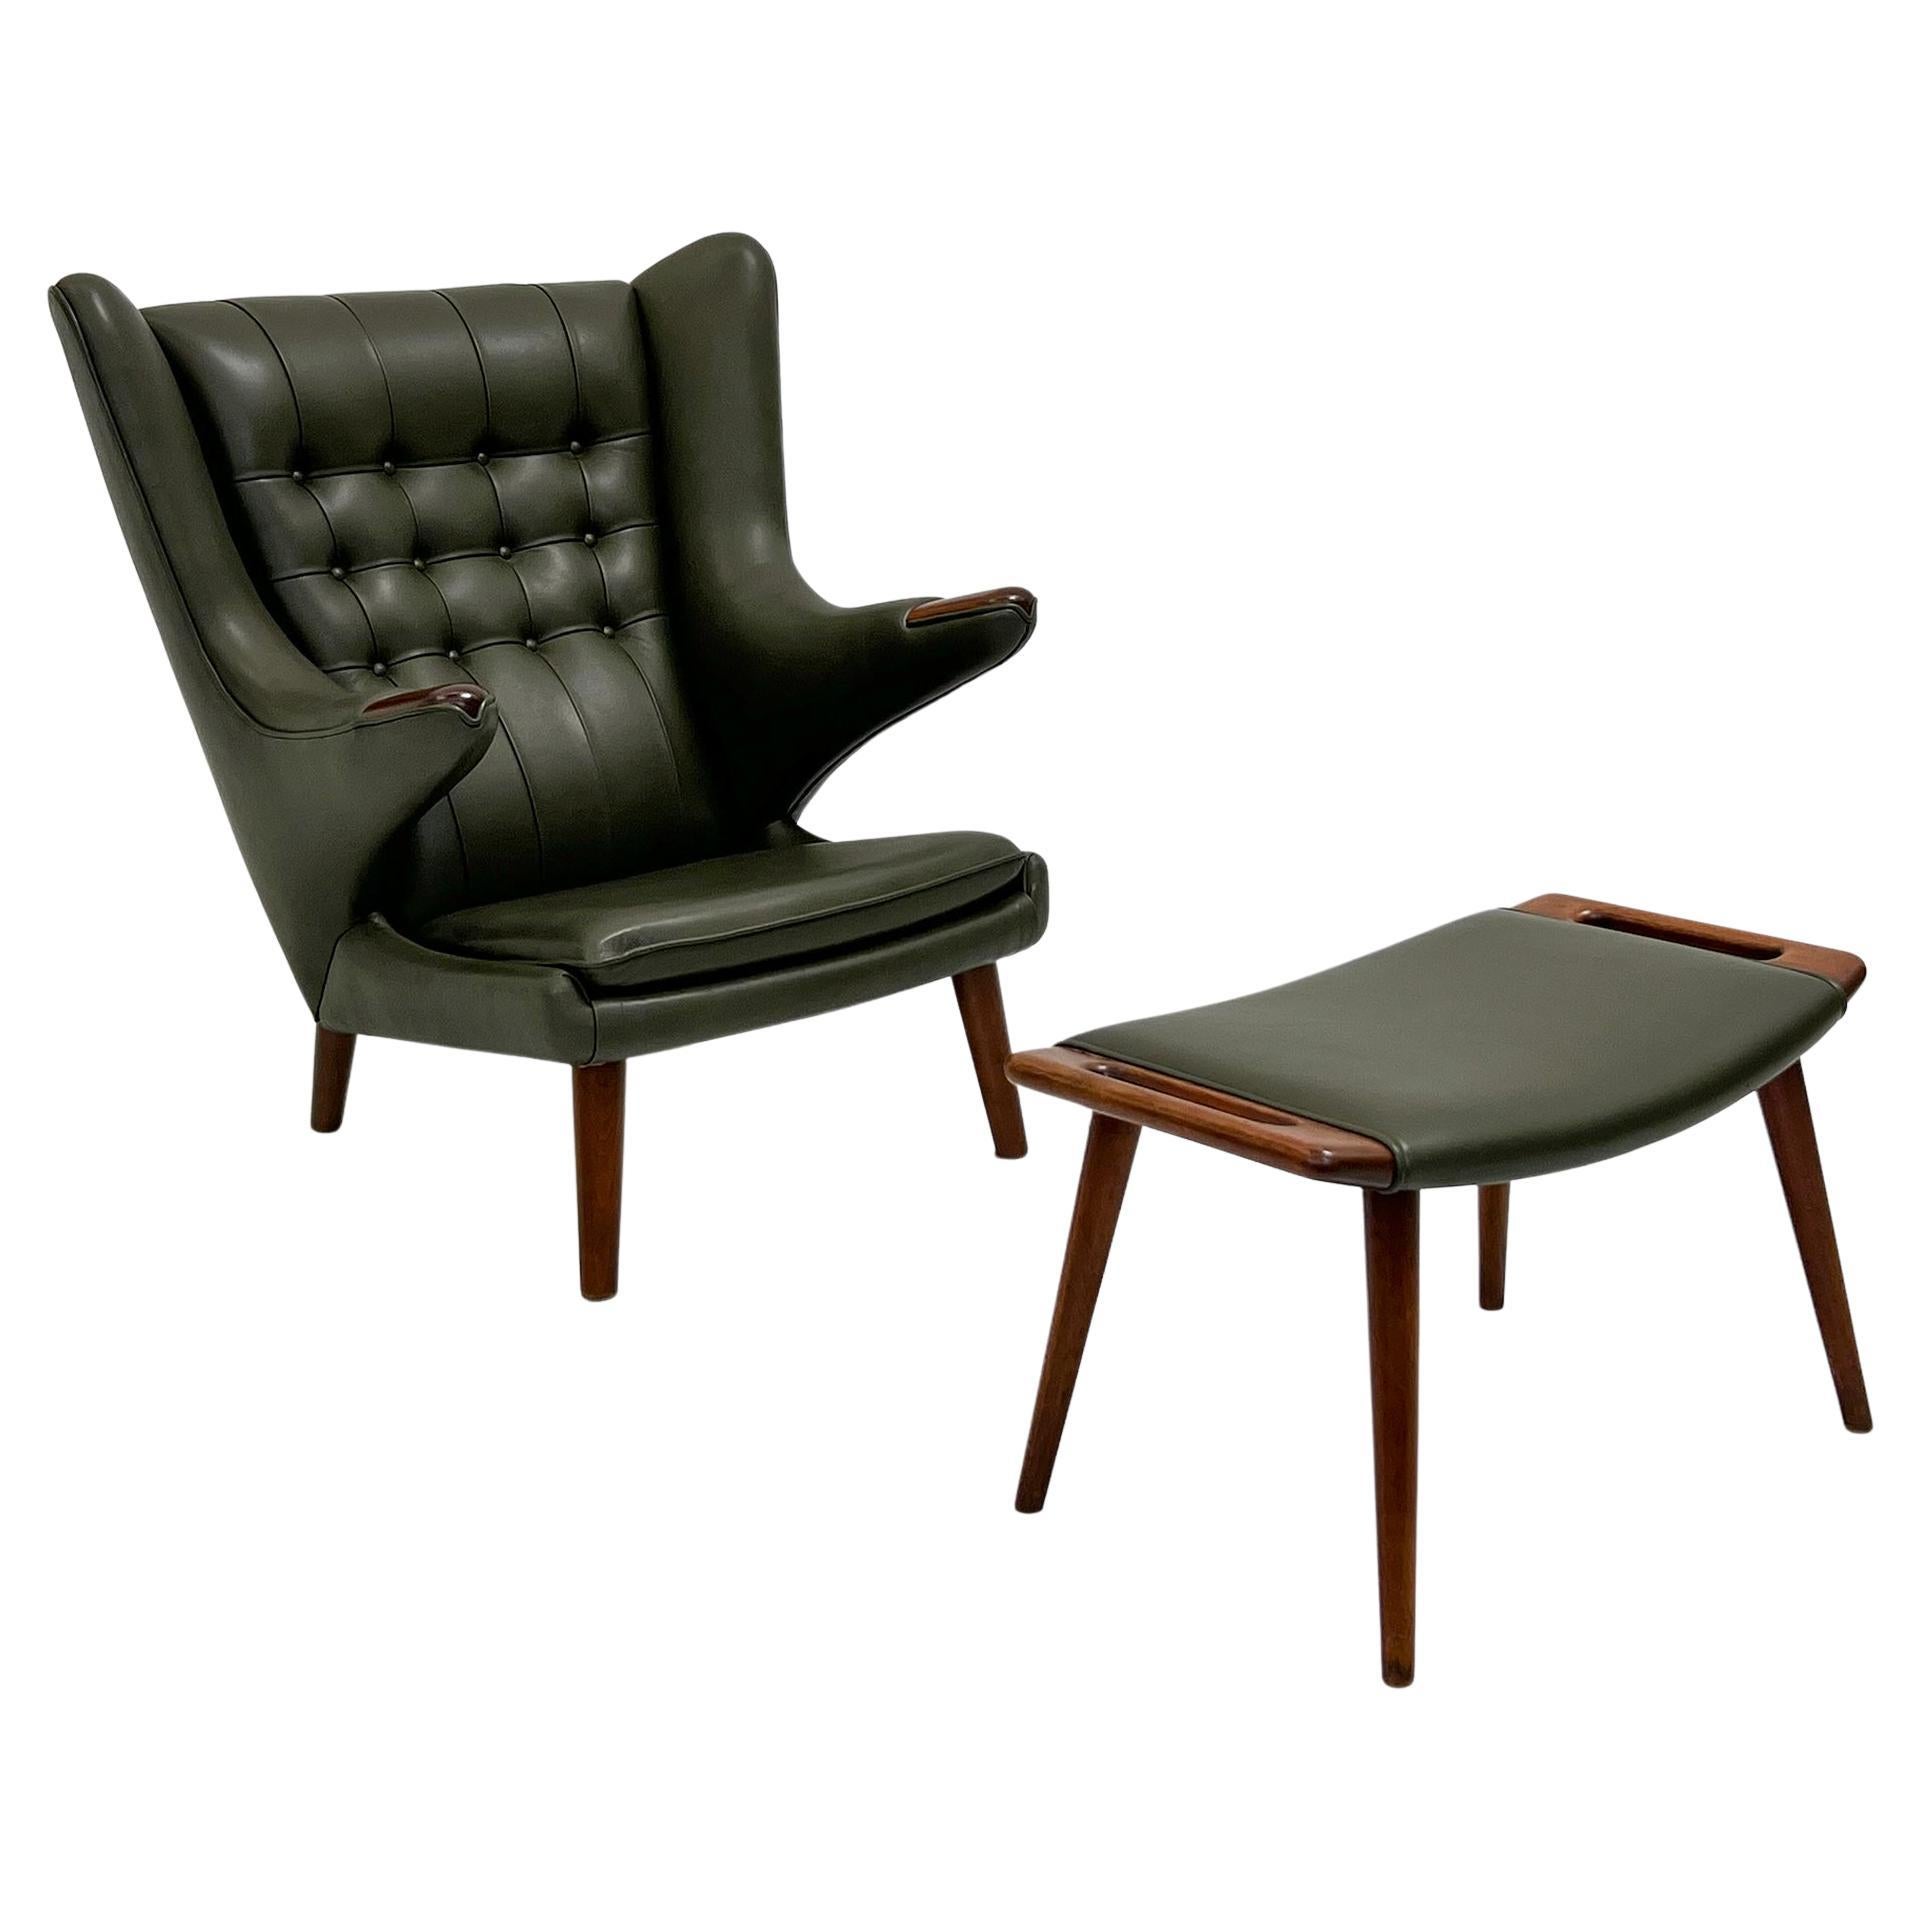 Une chaise longue absolument magnifique de Hans Wegner pour A.P. est disponible aujourd'hui. Volé, Danemark, 1950 AP-19, avec ottoman assorti AP-29. Une chaise véritablement emblématique, conçue par Hans Wegner en 1951 pour A.P Stolen. Cette chaise